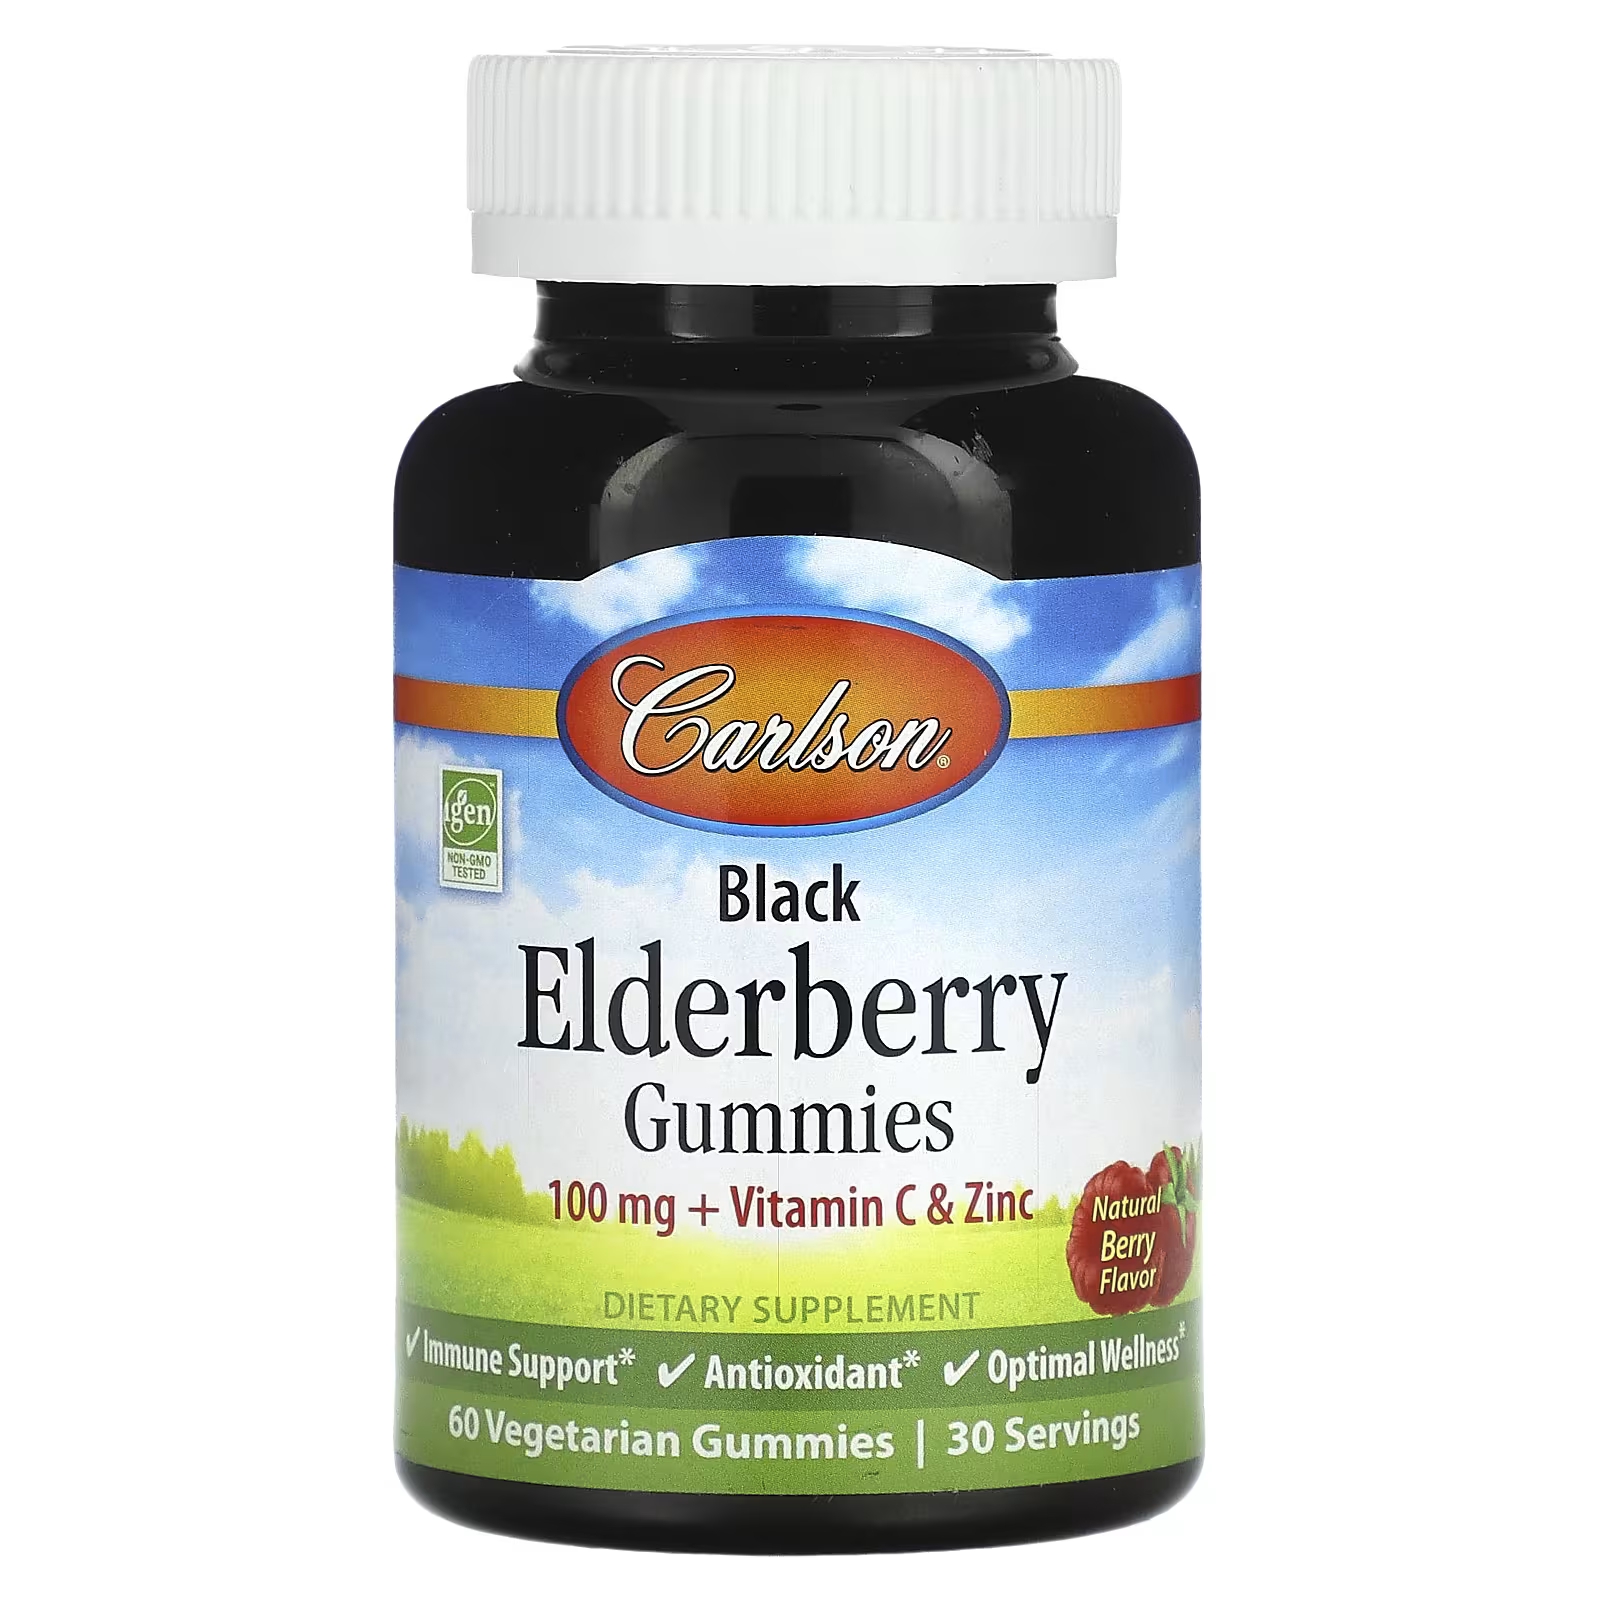 Пищевая добавка Carlson Black Elderberry Gummies Natural Berry, 60 вегетарианских конфет